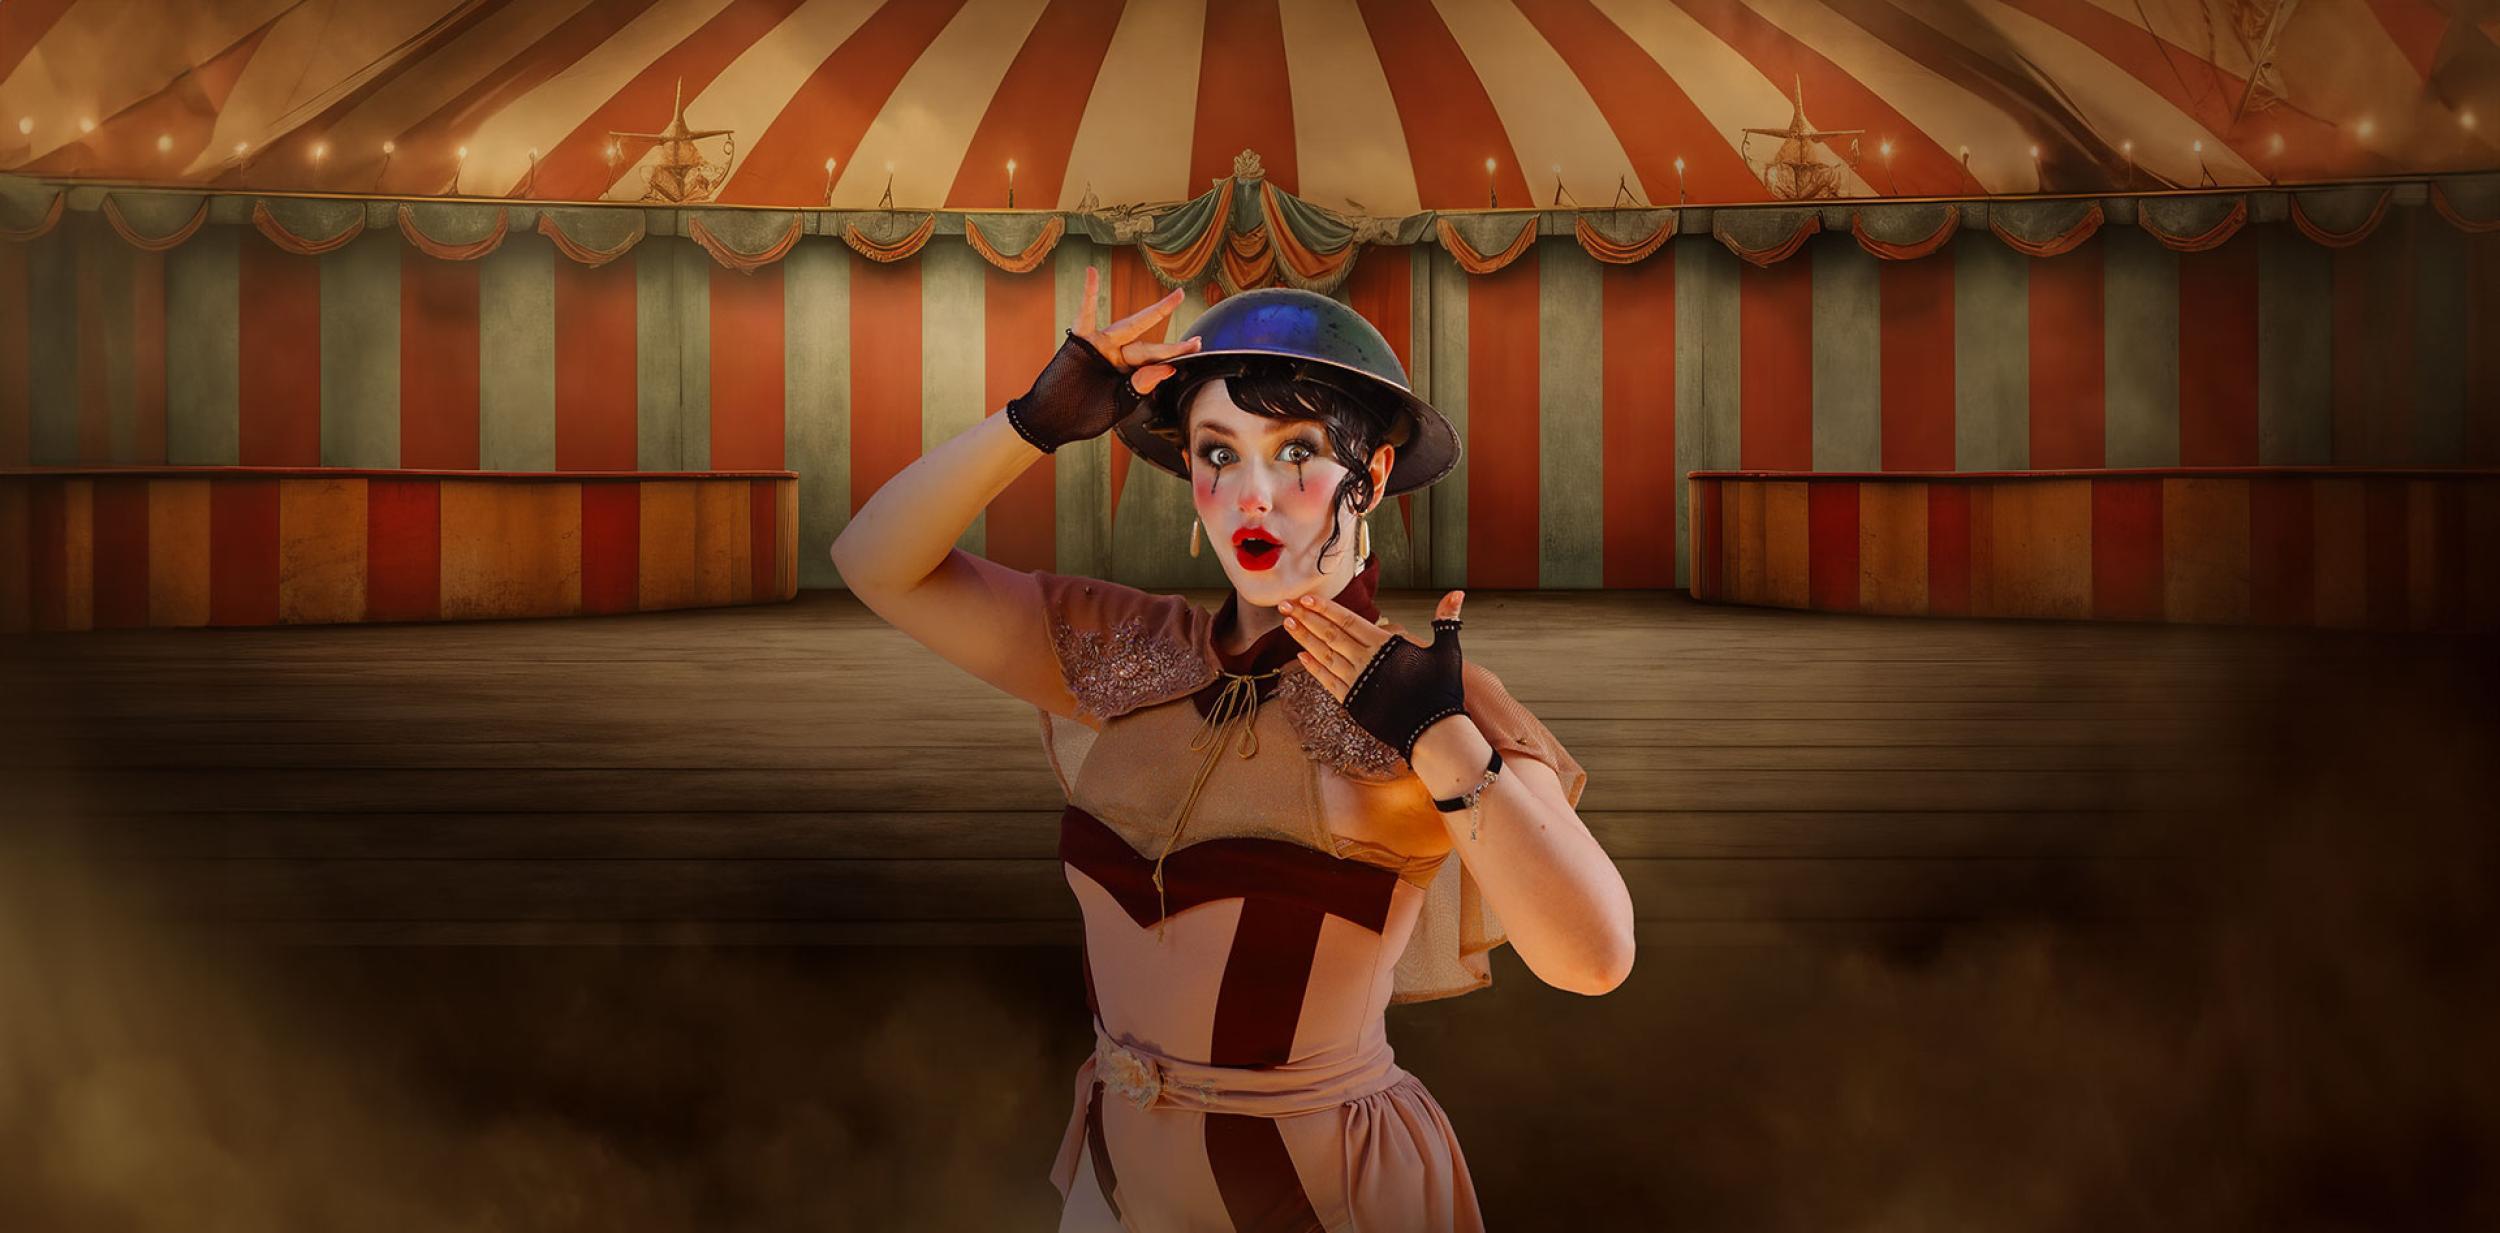 A circus performer wearing a first world war helmet